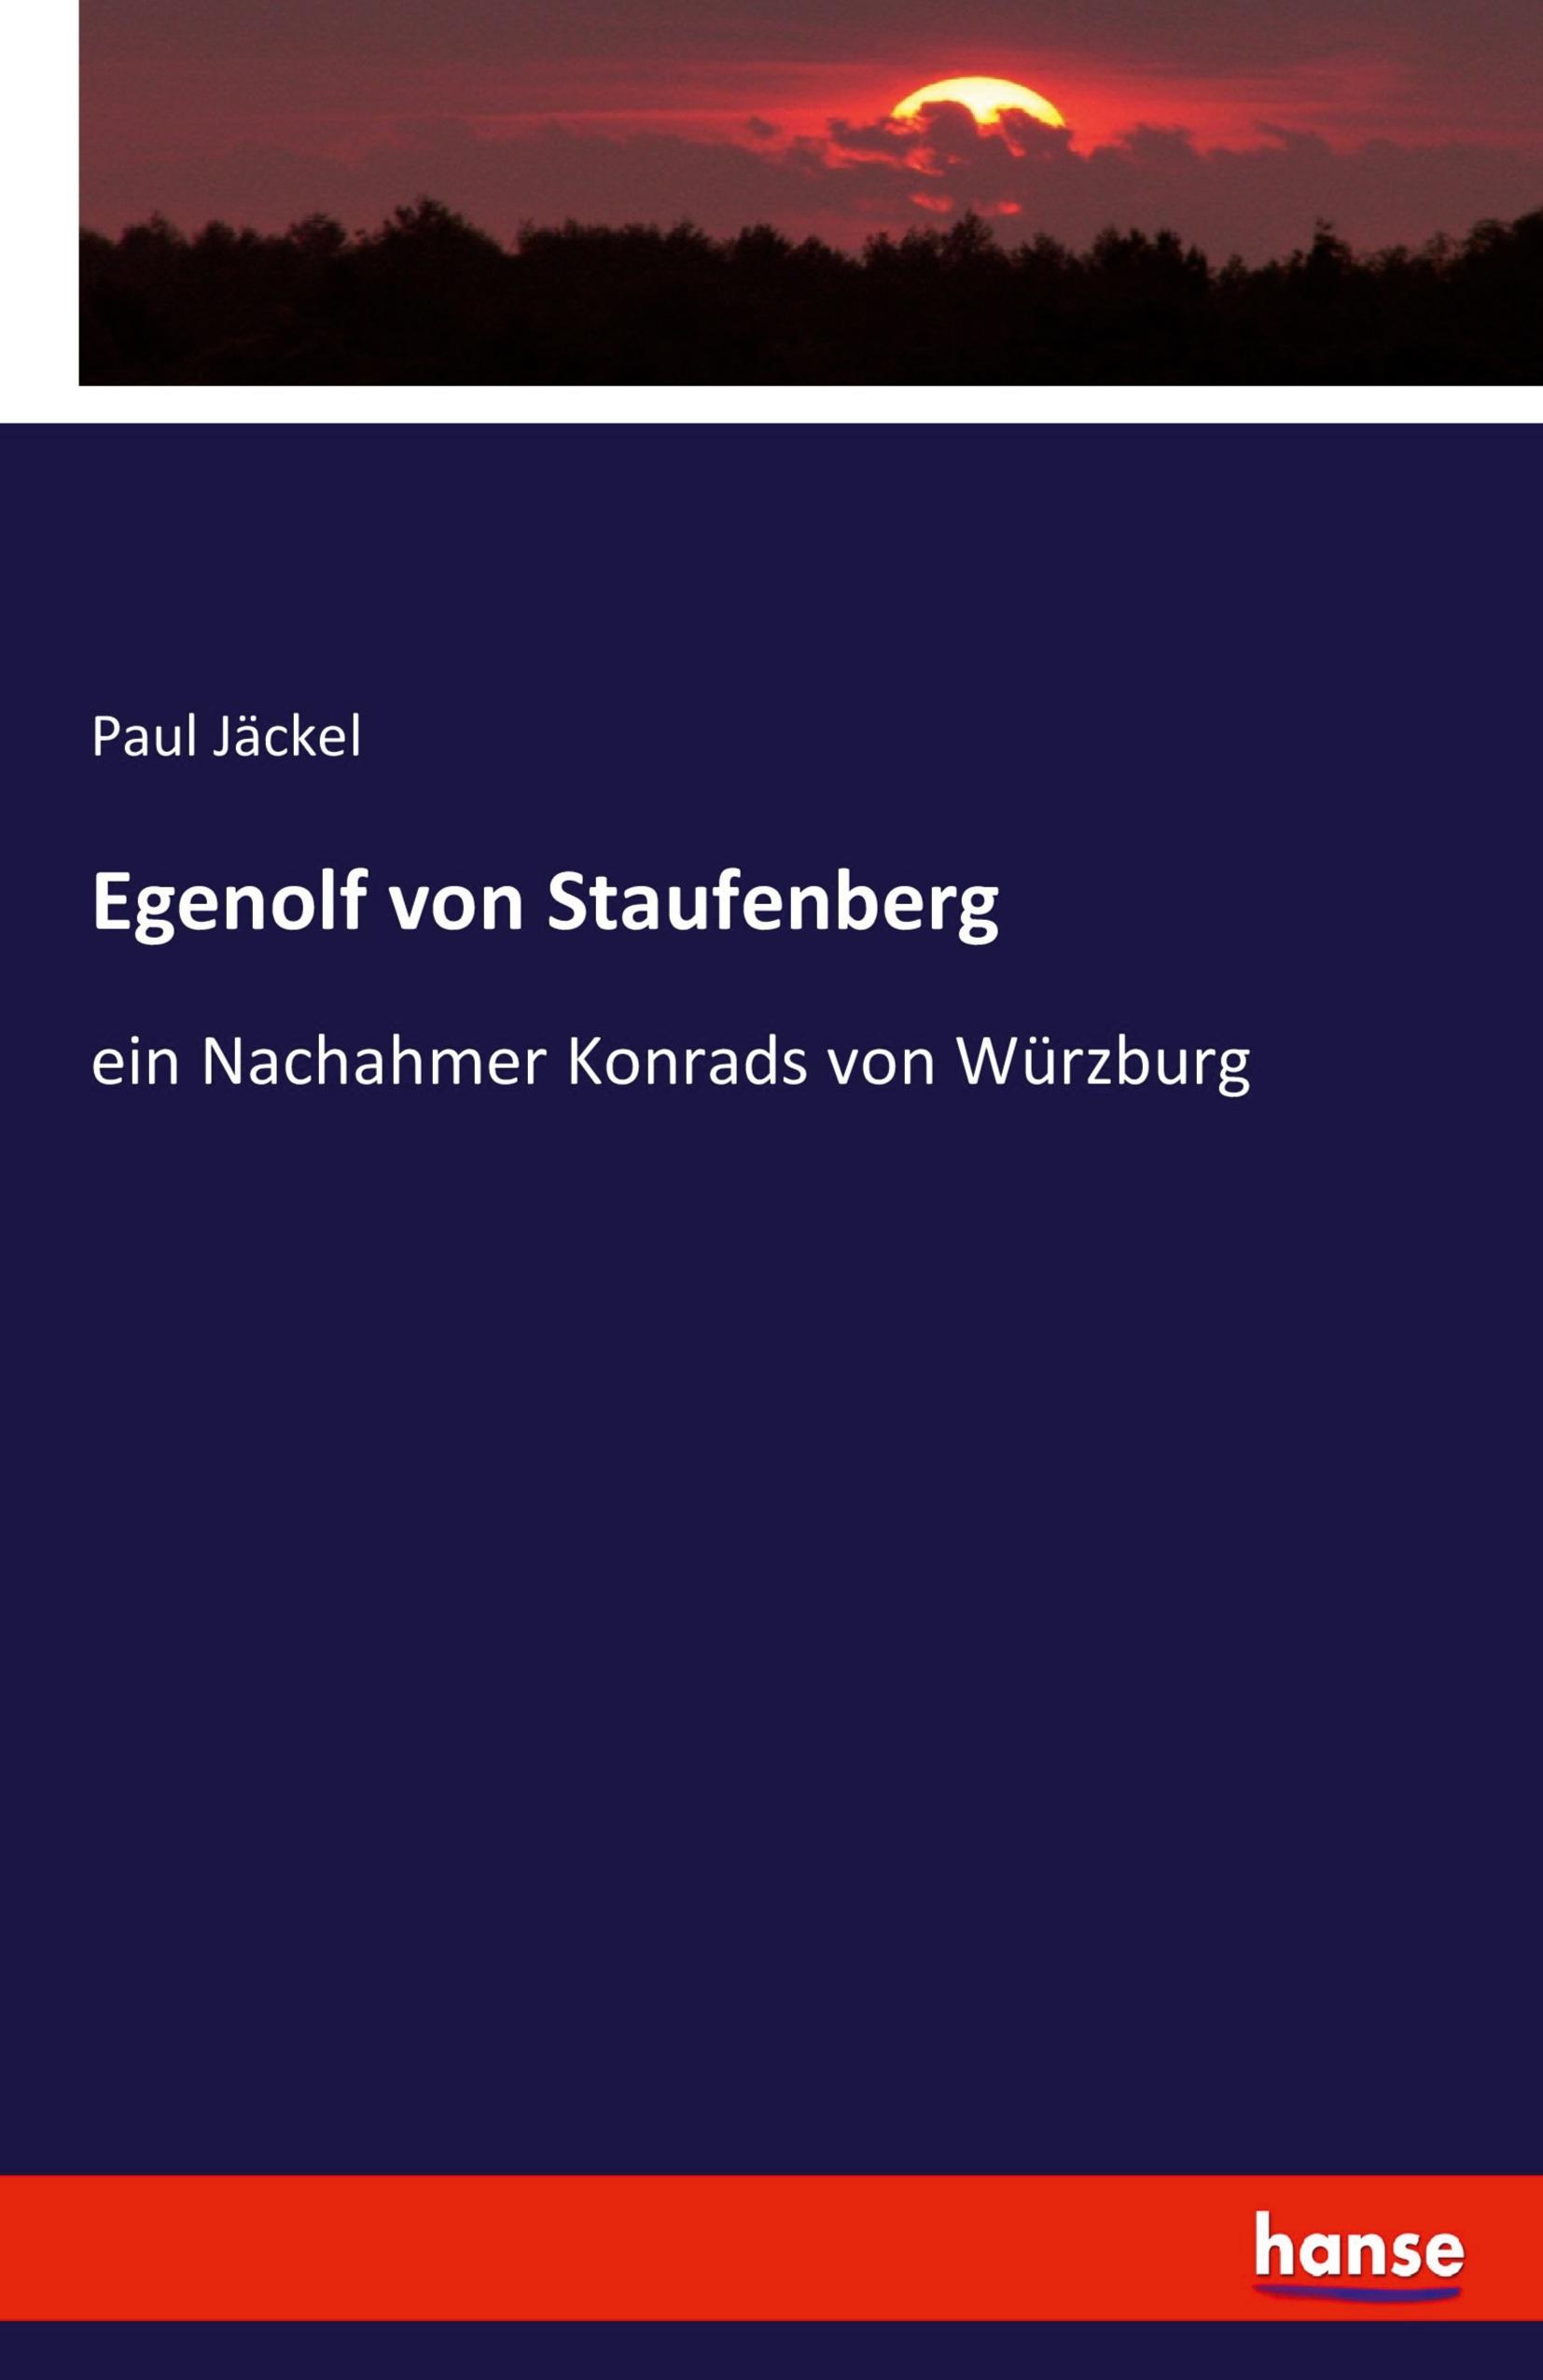 Egenolf von Staufenberg - Jaeckel, Paul